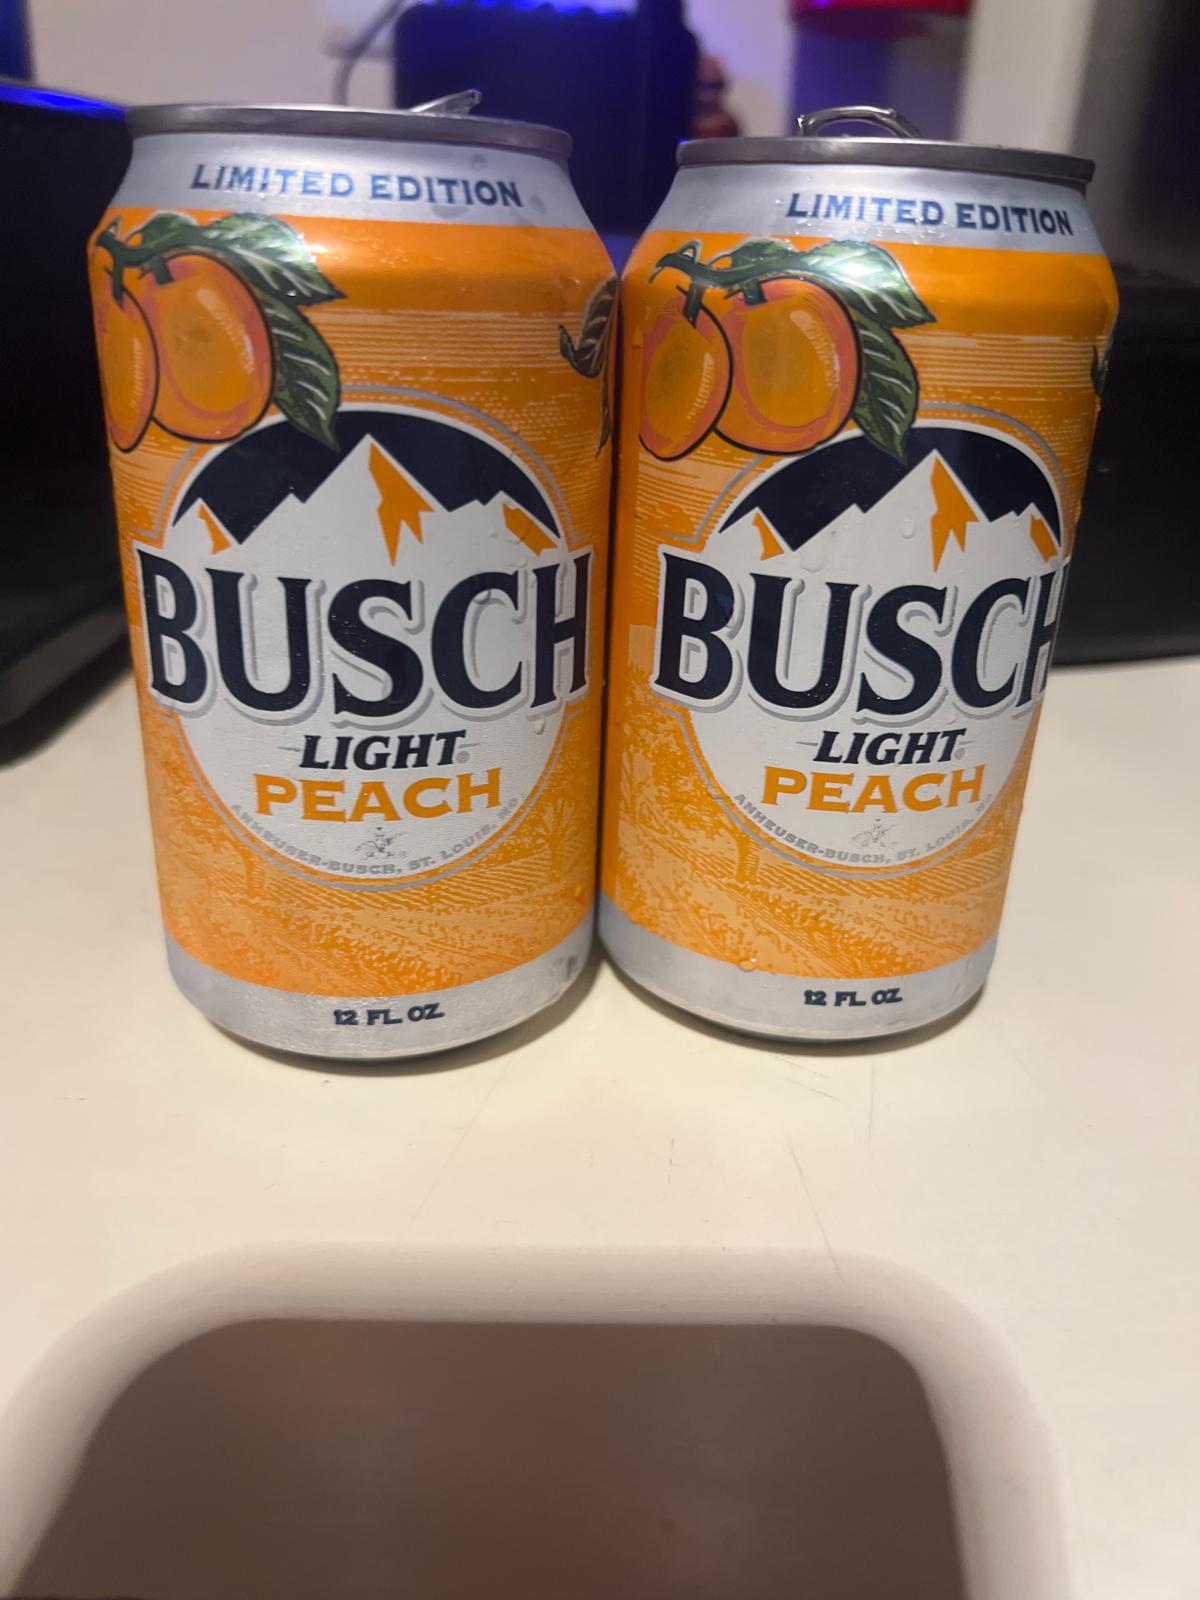 Busch Light Peach